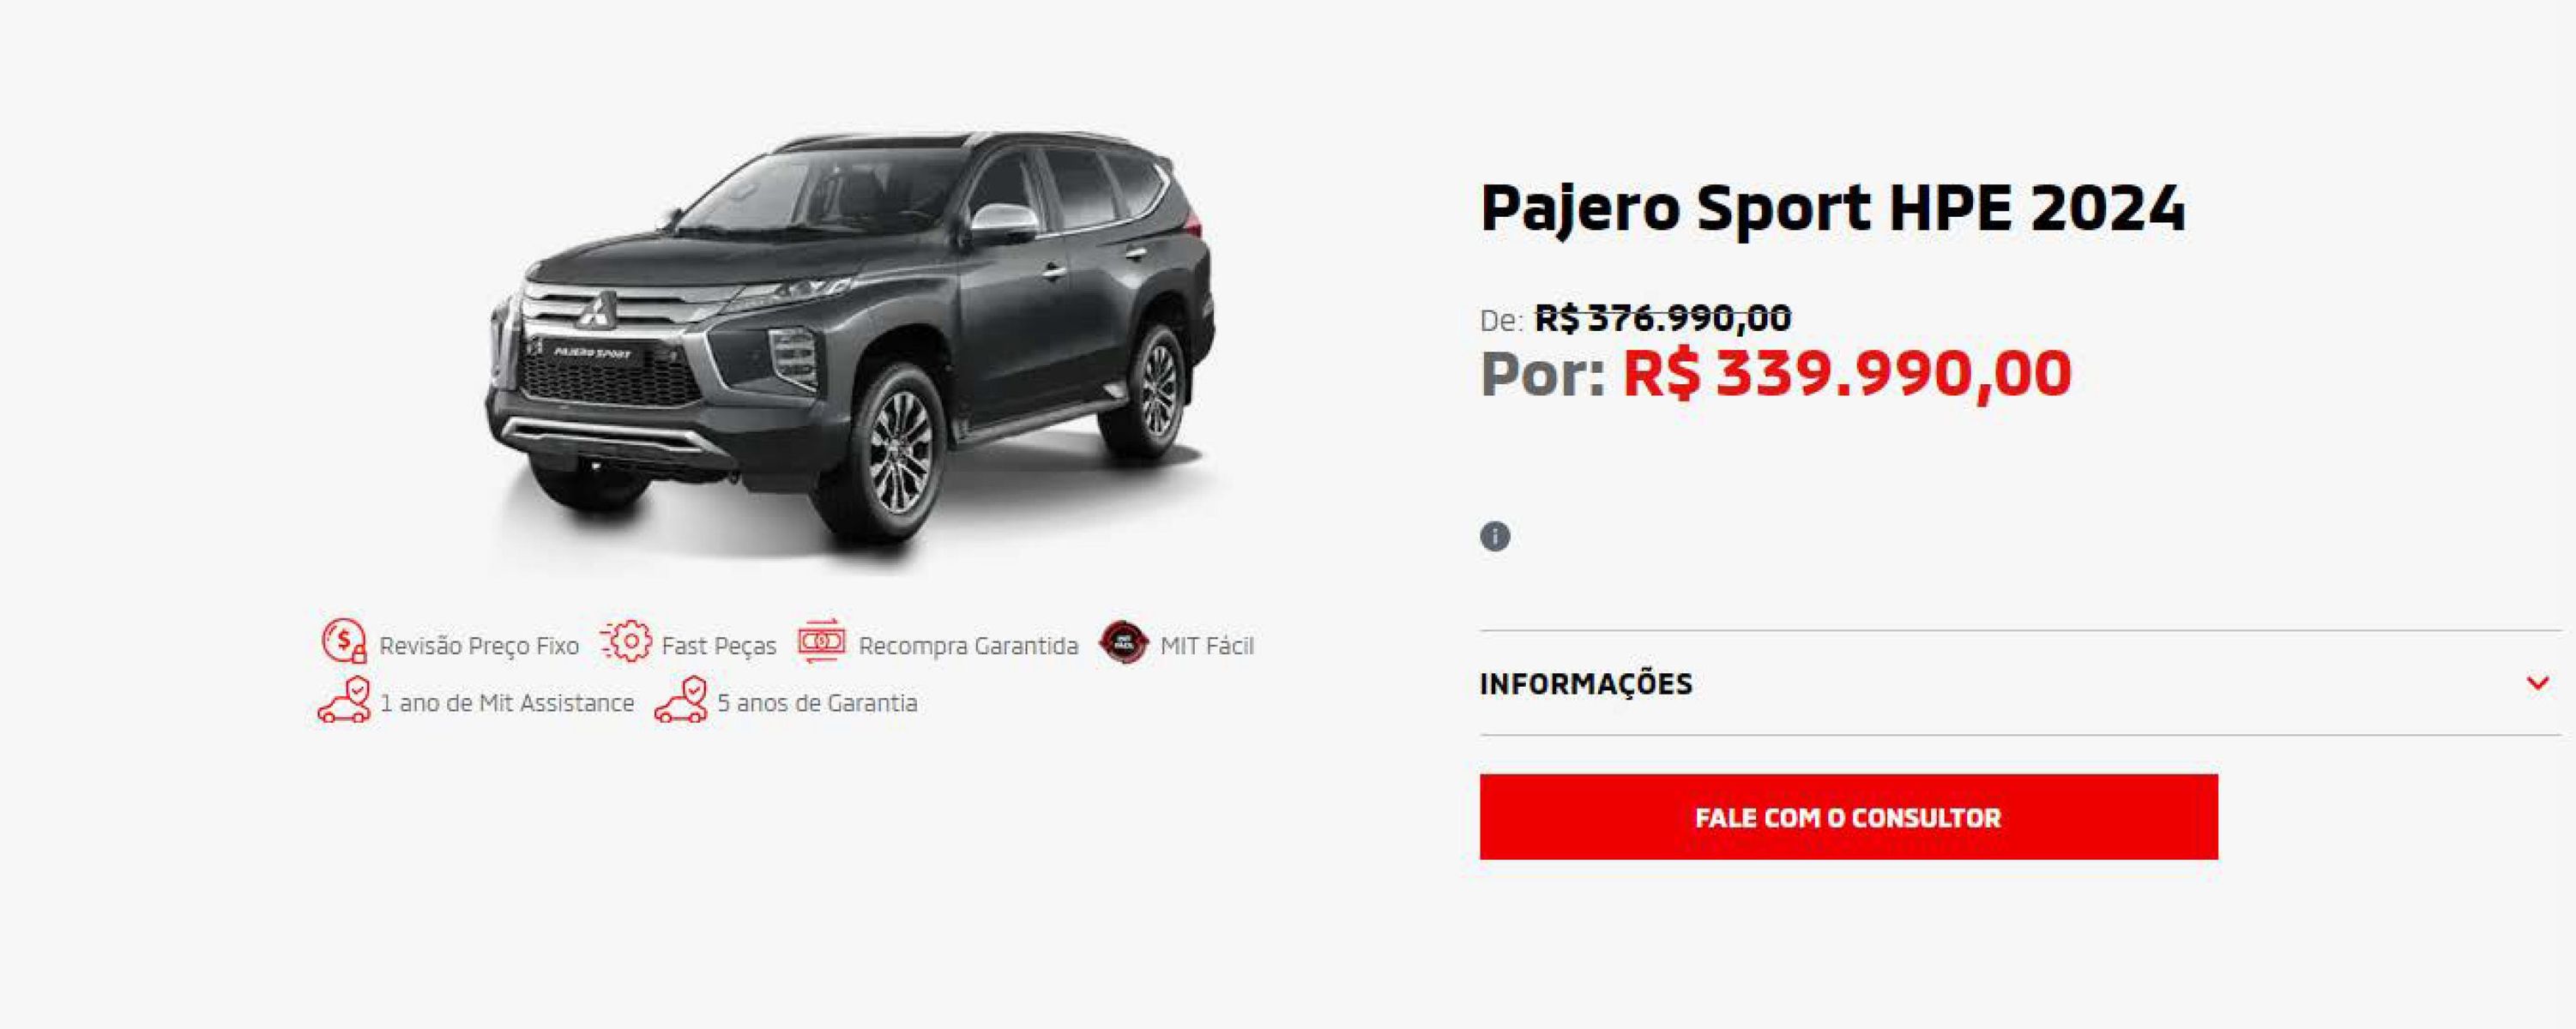 Desconto de R$ 37.000 no Pajero Sport HPE 2024